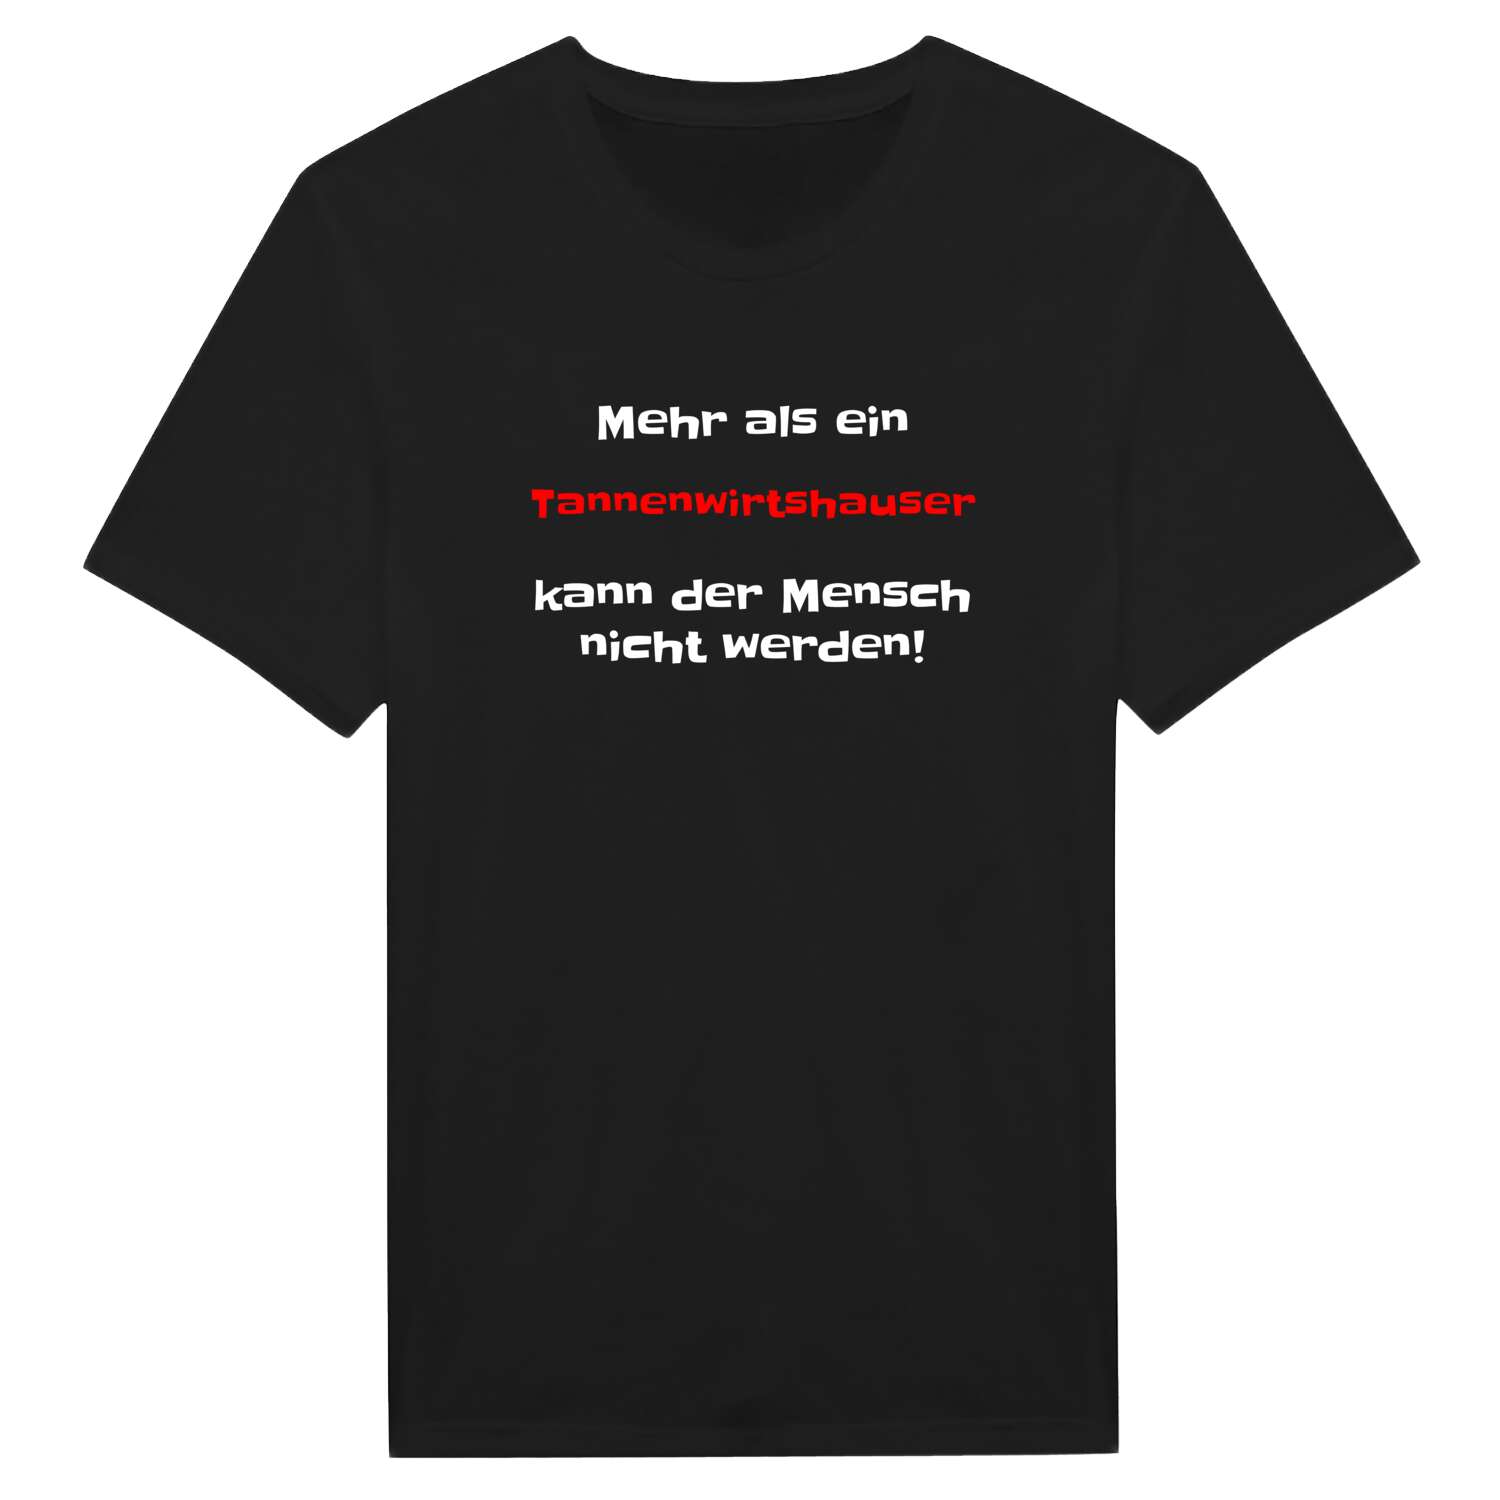 Tannenwirtshaus T-Shirt »Mehr als ein«